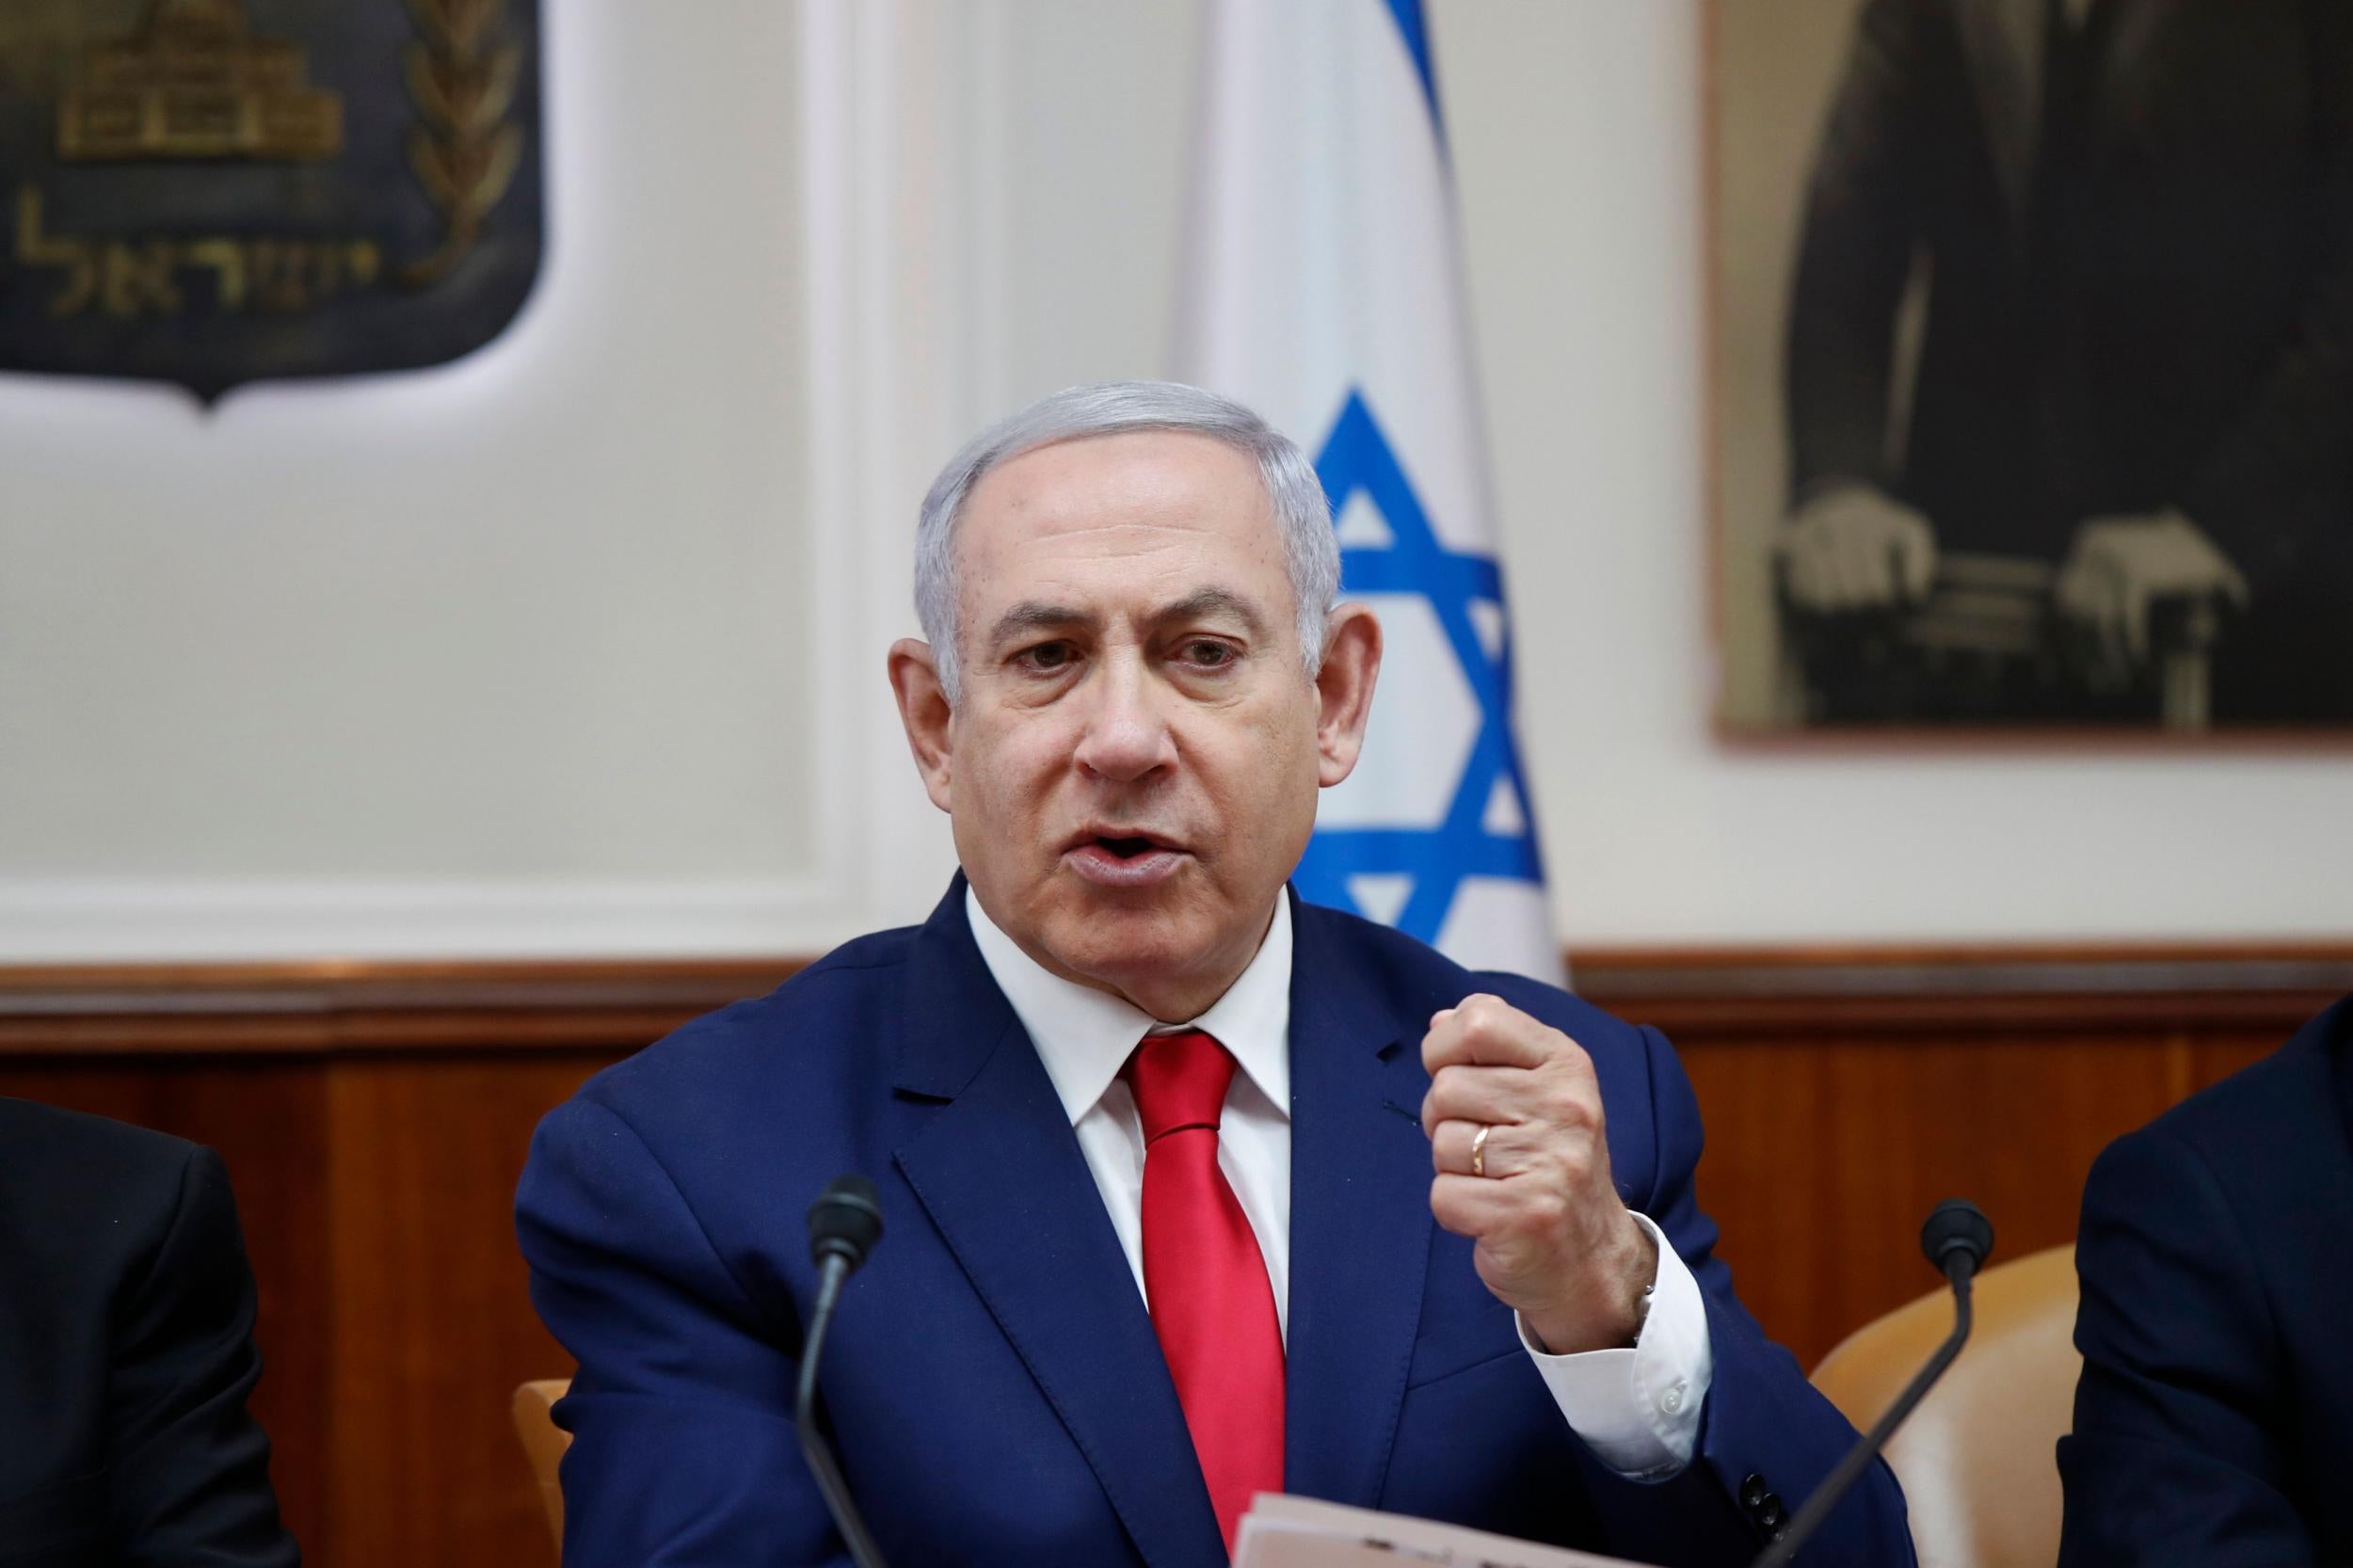 Benjamin Netanyahu speaking during the weekly cabinet meeting in Jerusalem